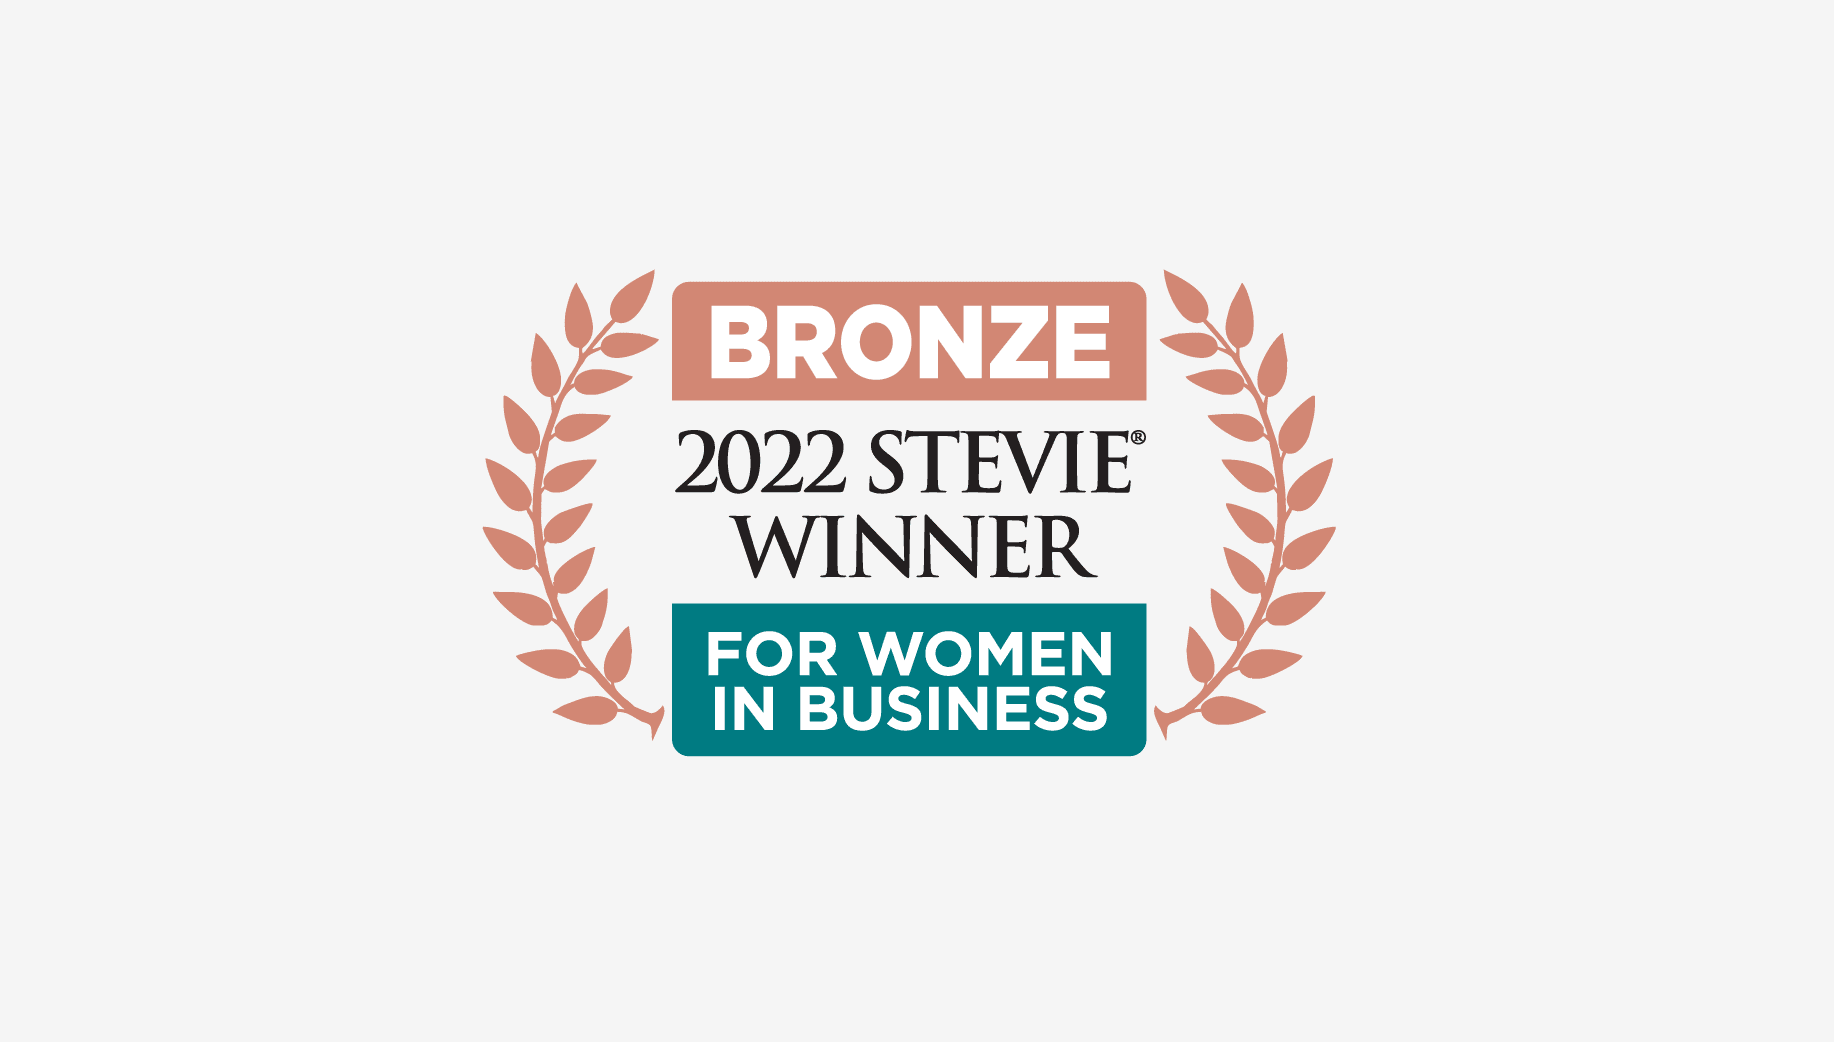 2022 Stevie Winner for Women in Business